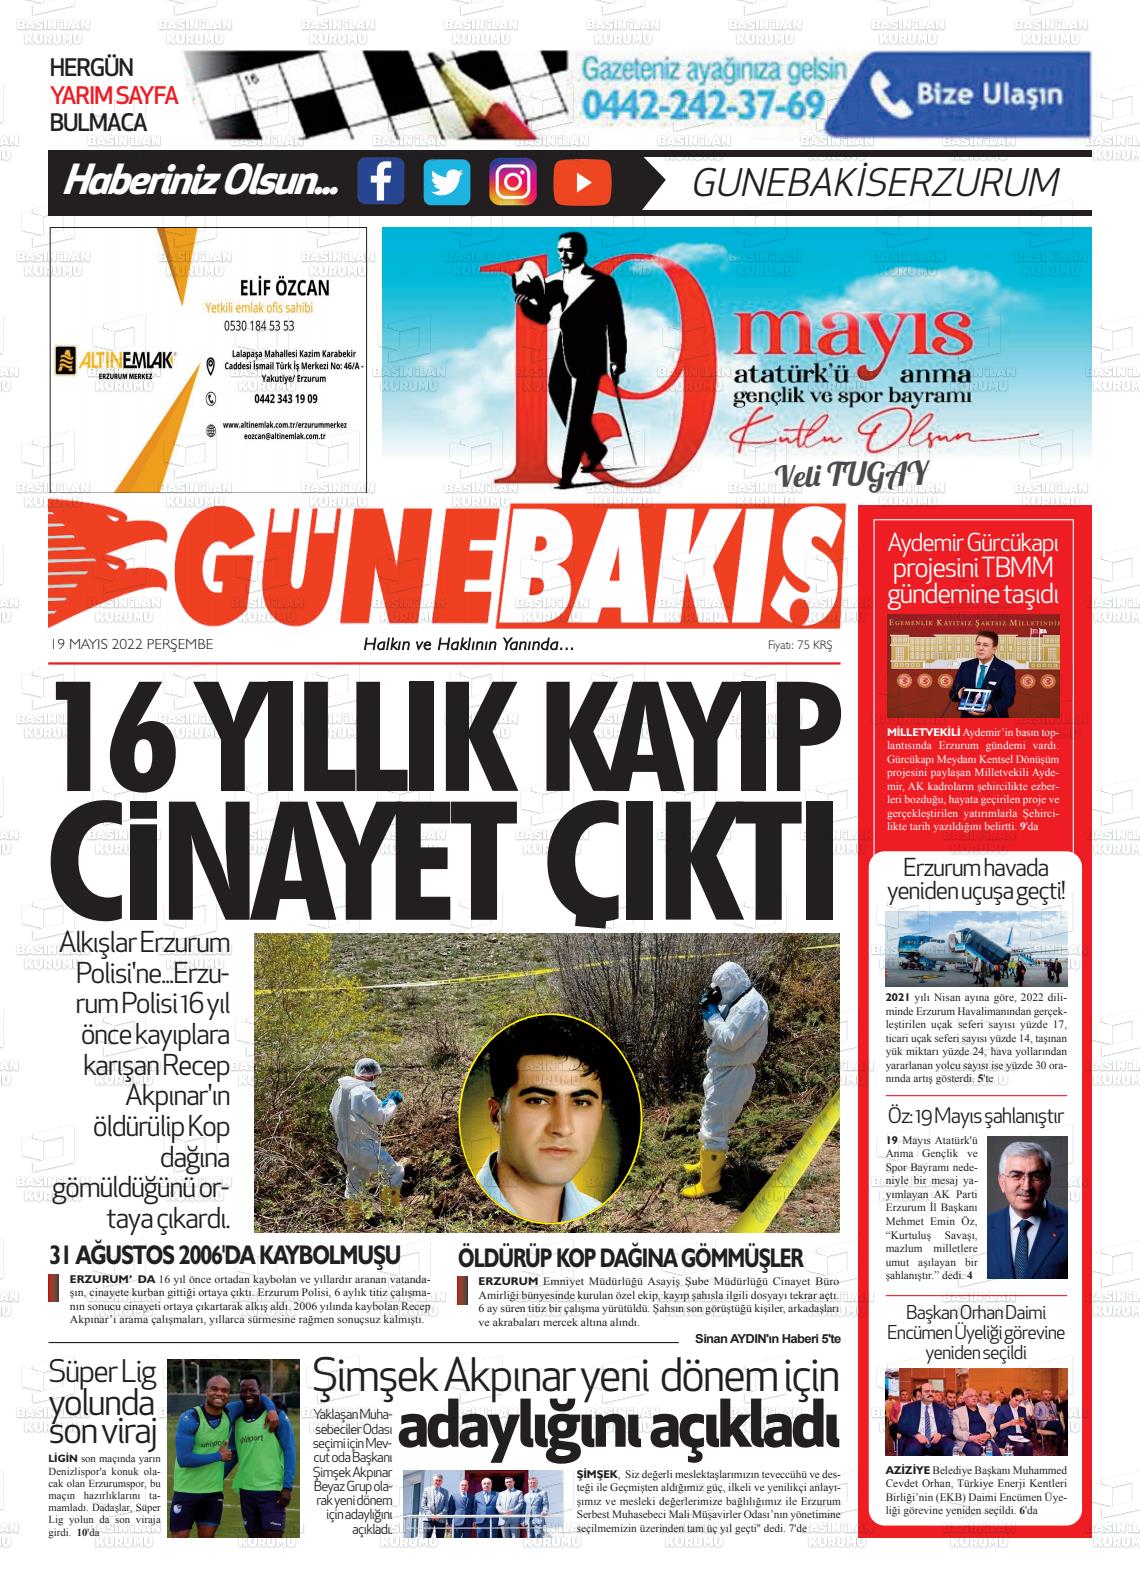 19 Mayıs 2022 Erzurum Günebakış Gazete Manşeti